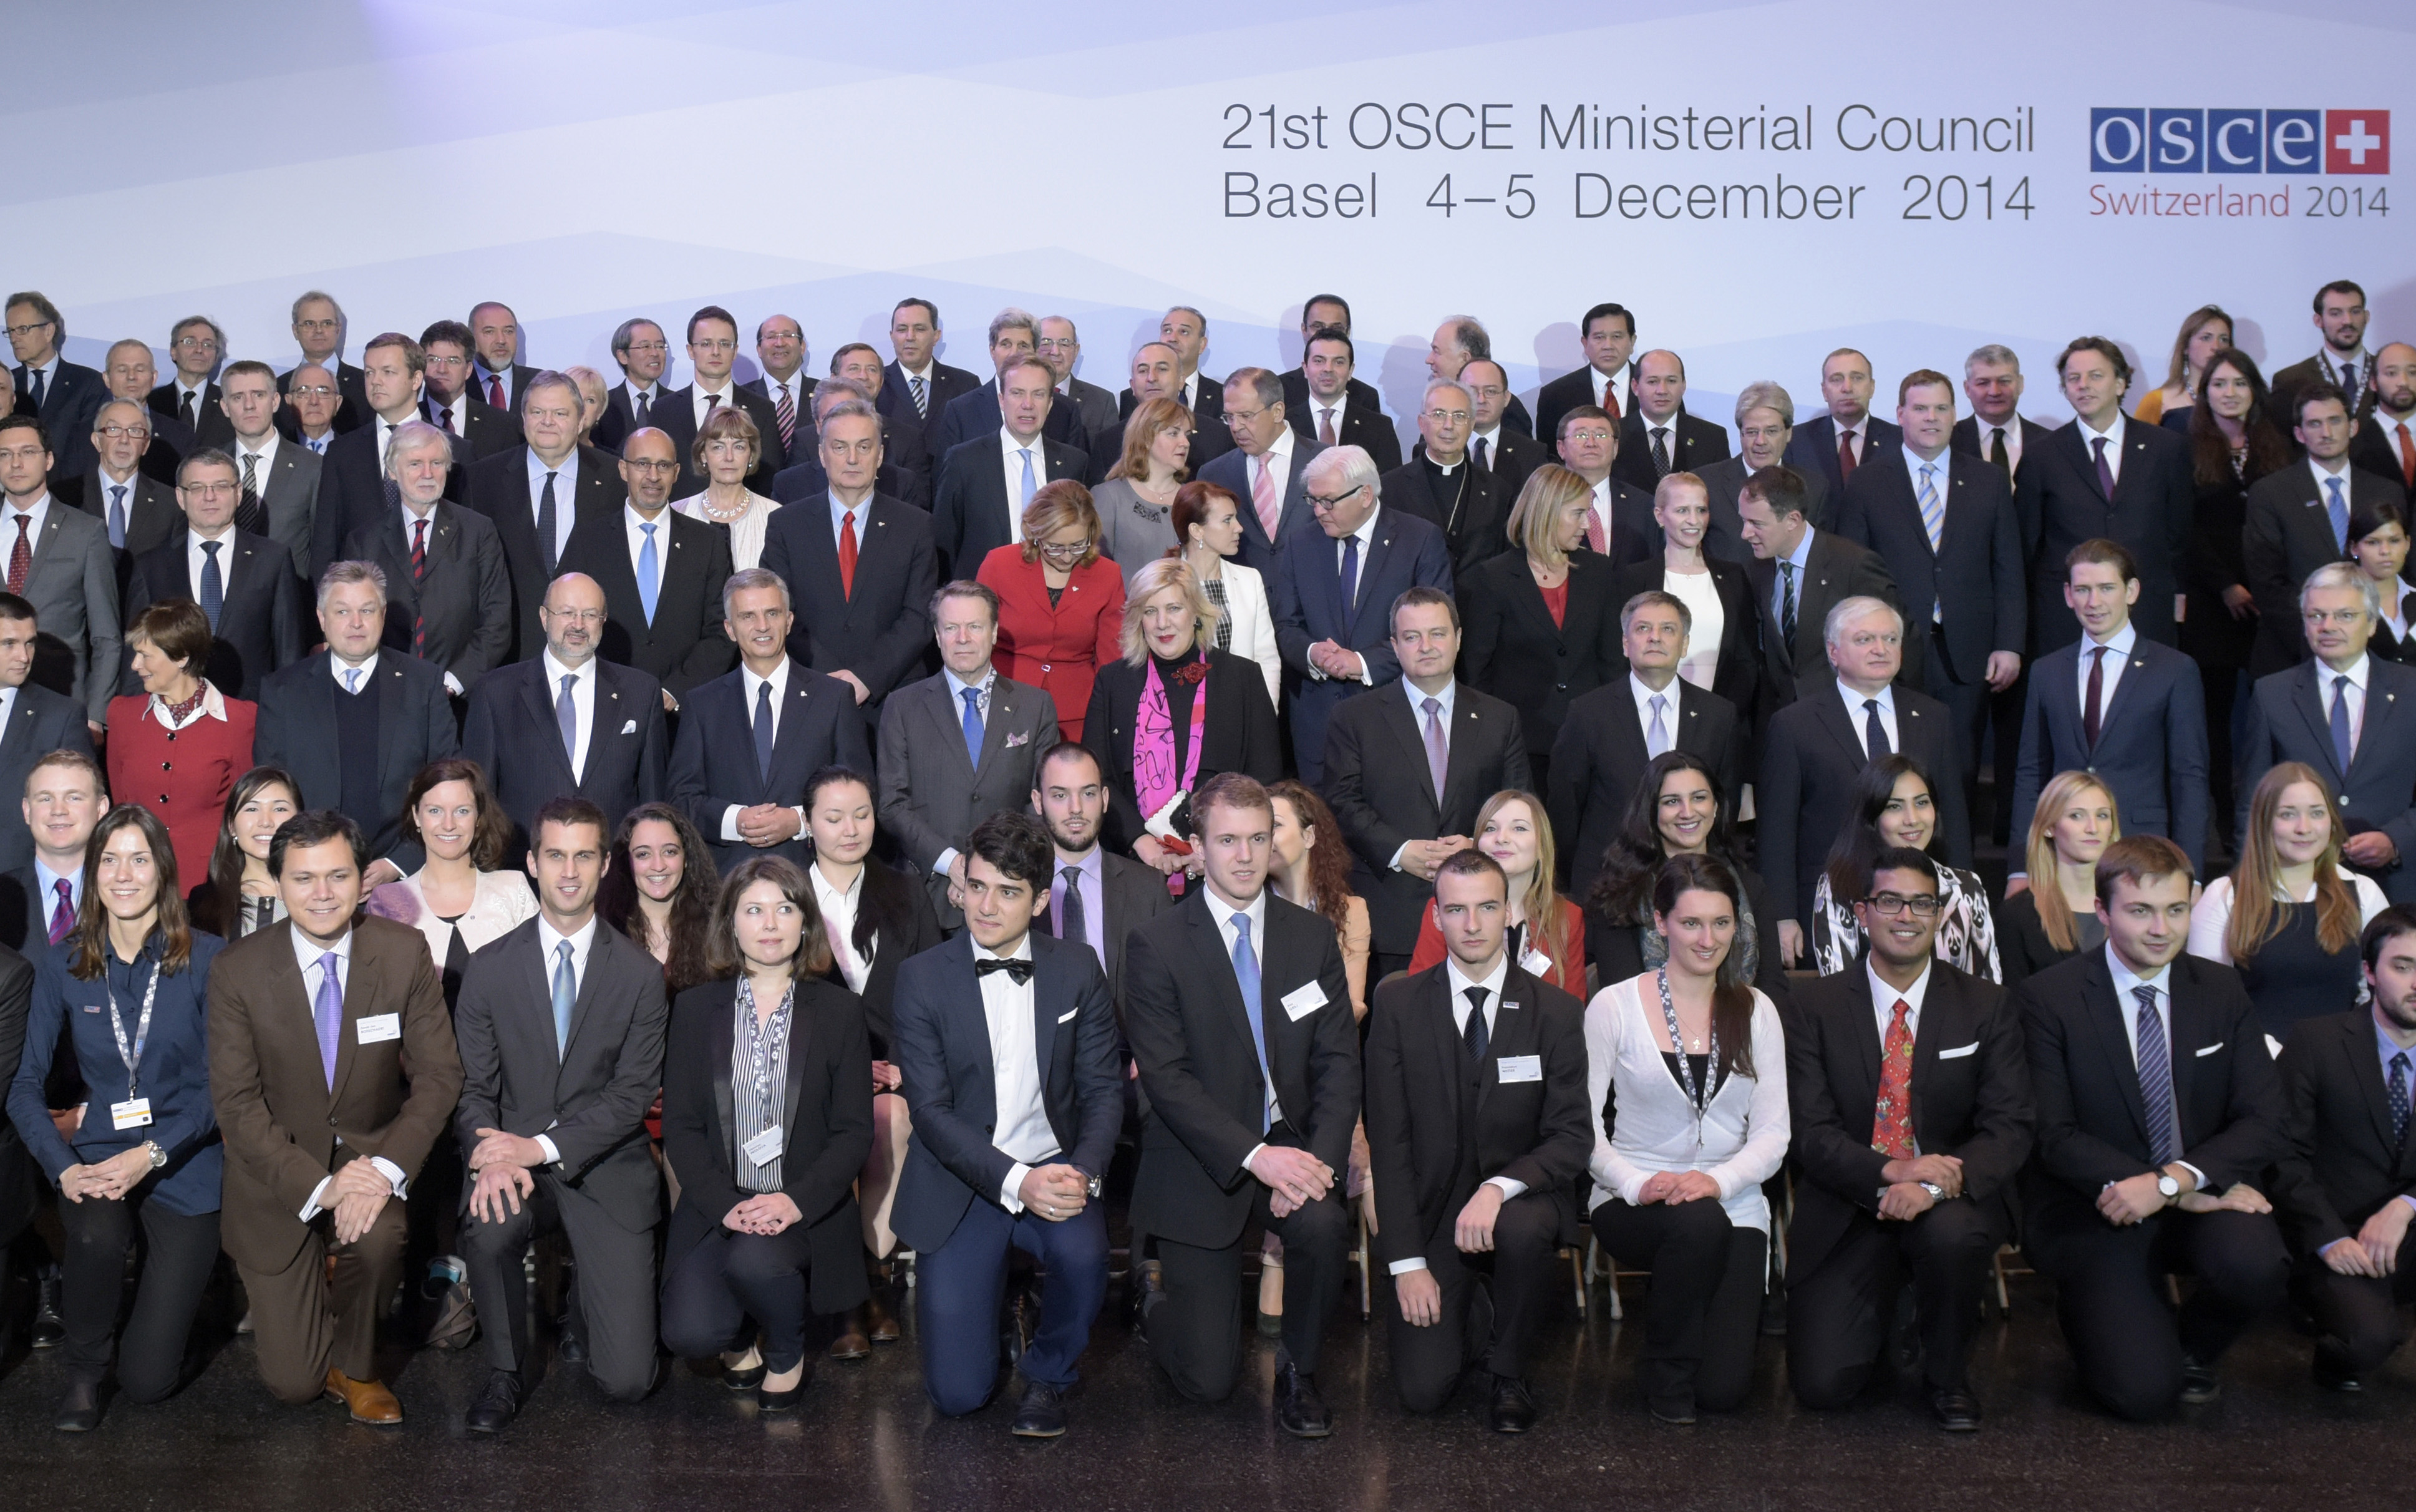 Die Jugendbotschafter der OSZE posieren für eine Gruppenaufnahme mit den Aussenministerinnnen und Aussenminister am Ministerratstreffen im Dezember 2014